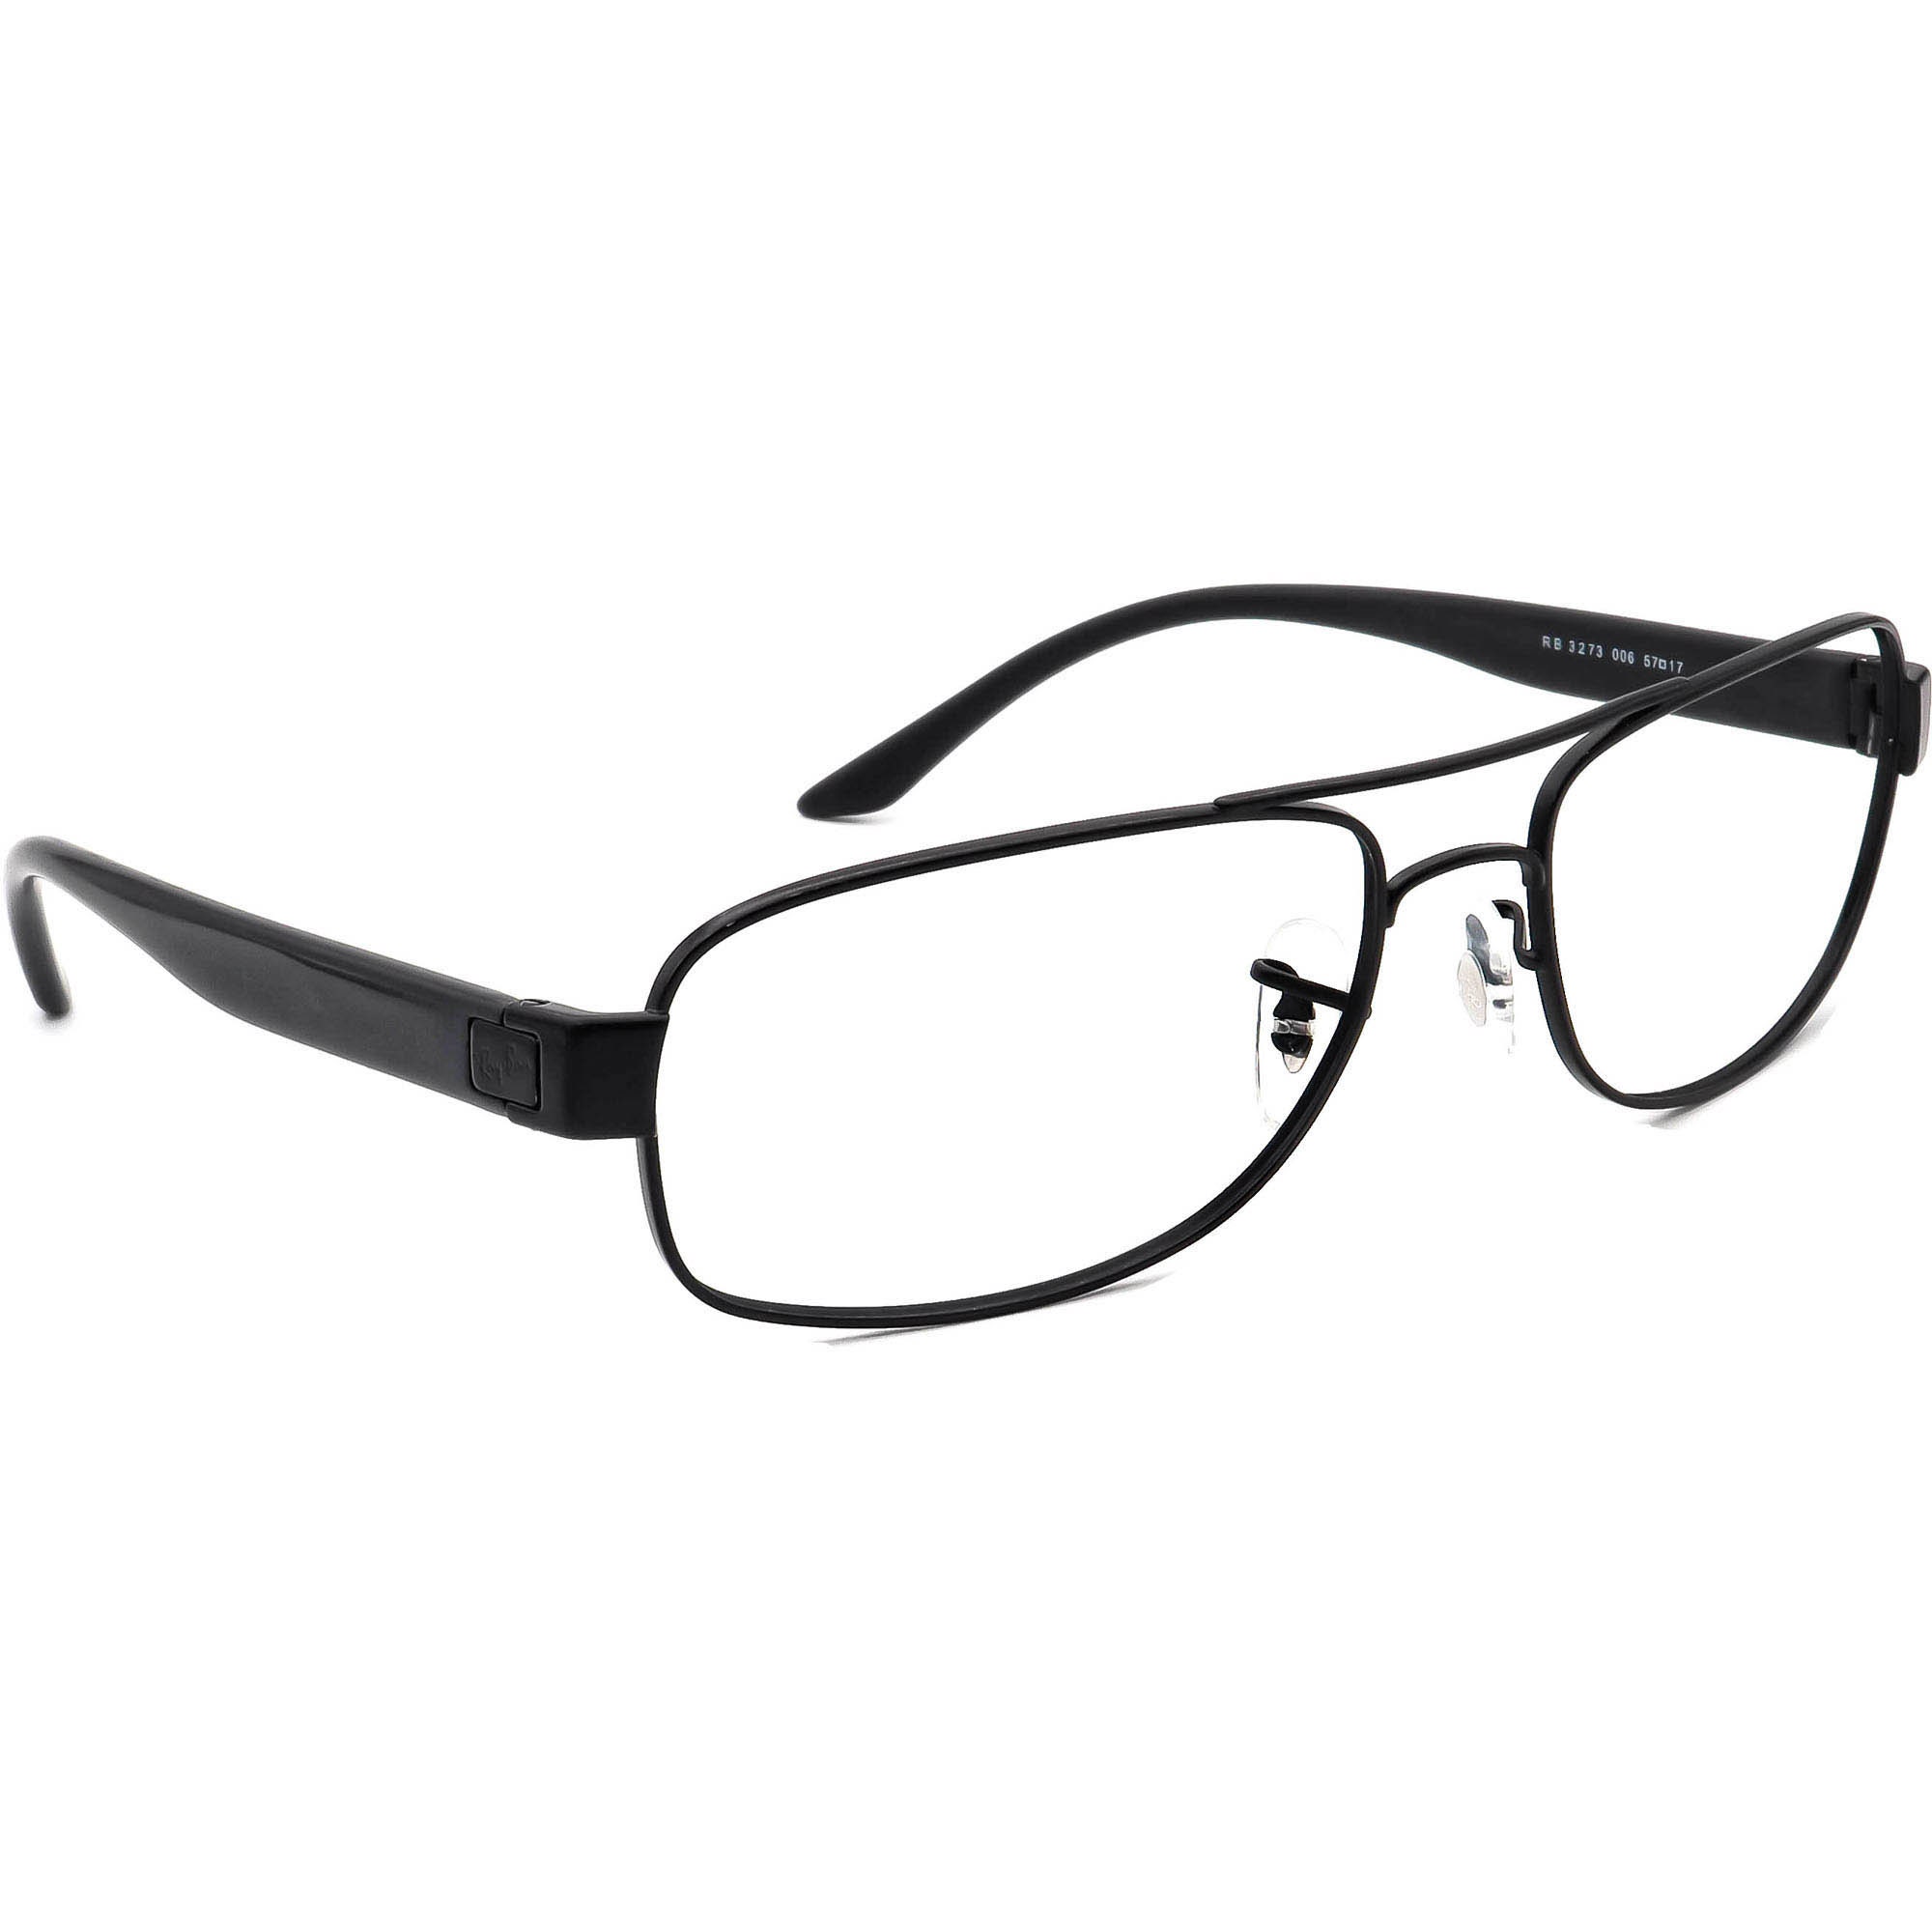 CHANEL Eyeglass Frames 3273 c. 714 Tortoise Women Glasses Clear